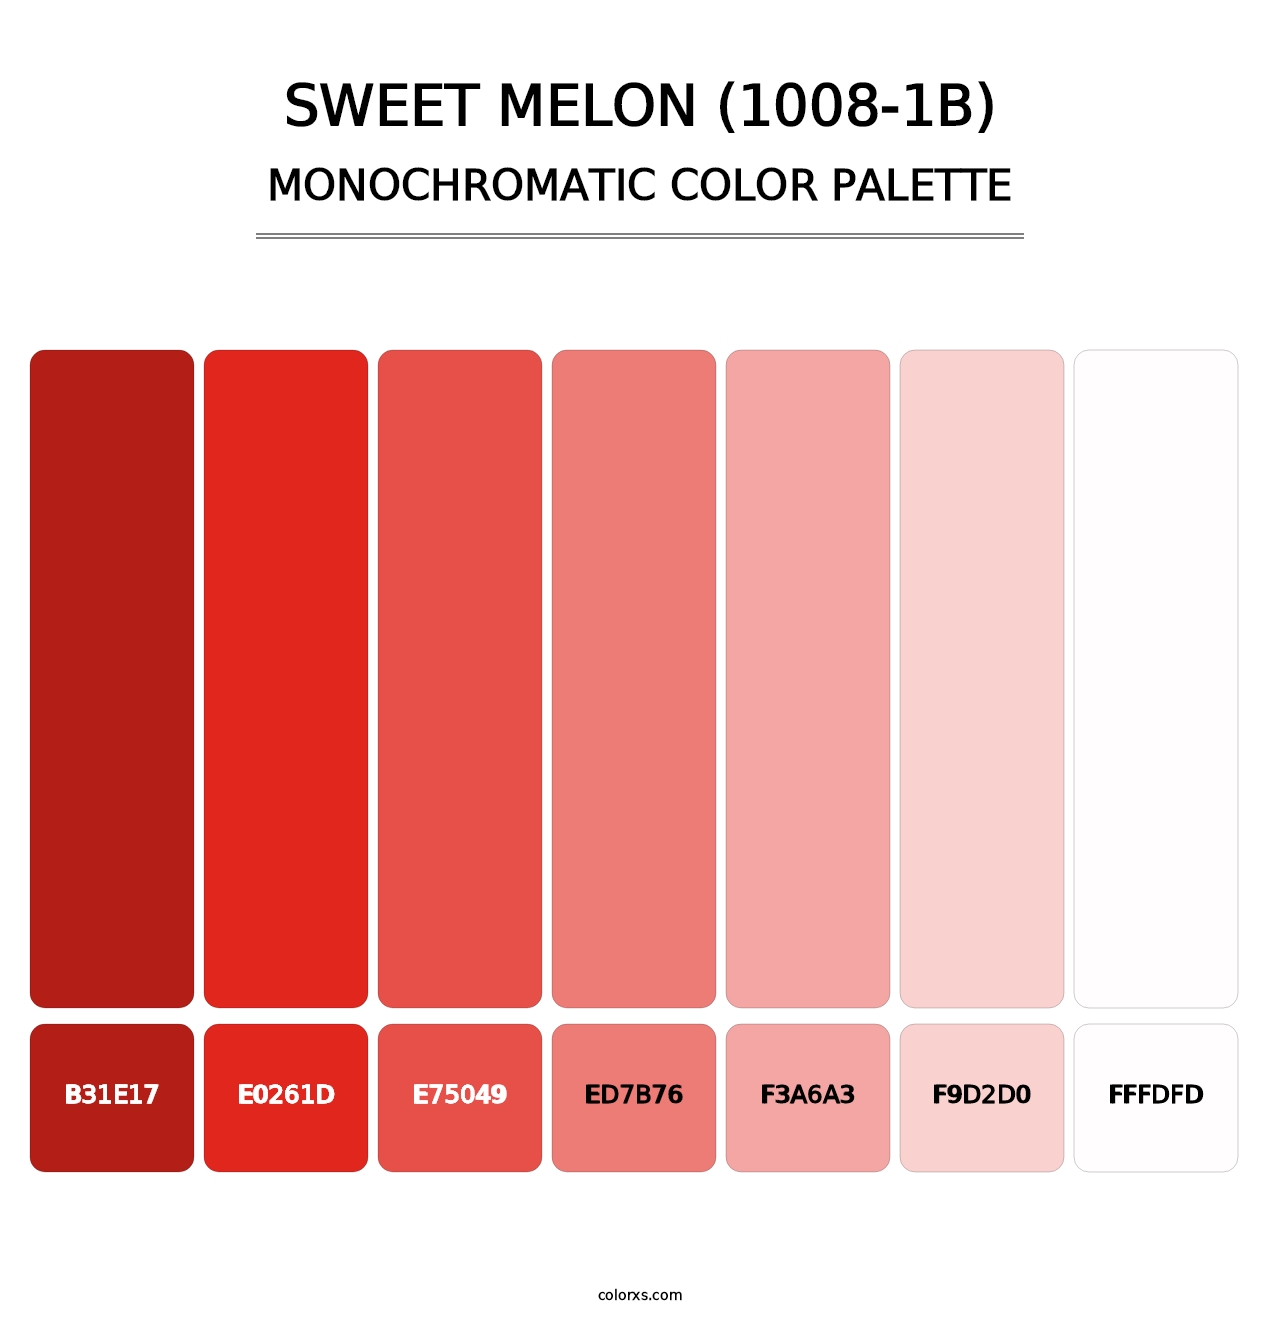 Sweet Melon (1008-1B) - Monochromatic Color Palette